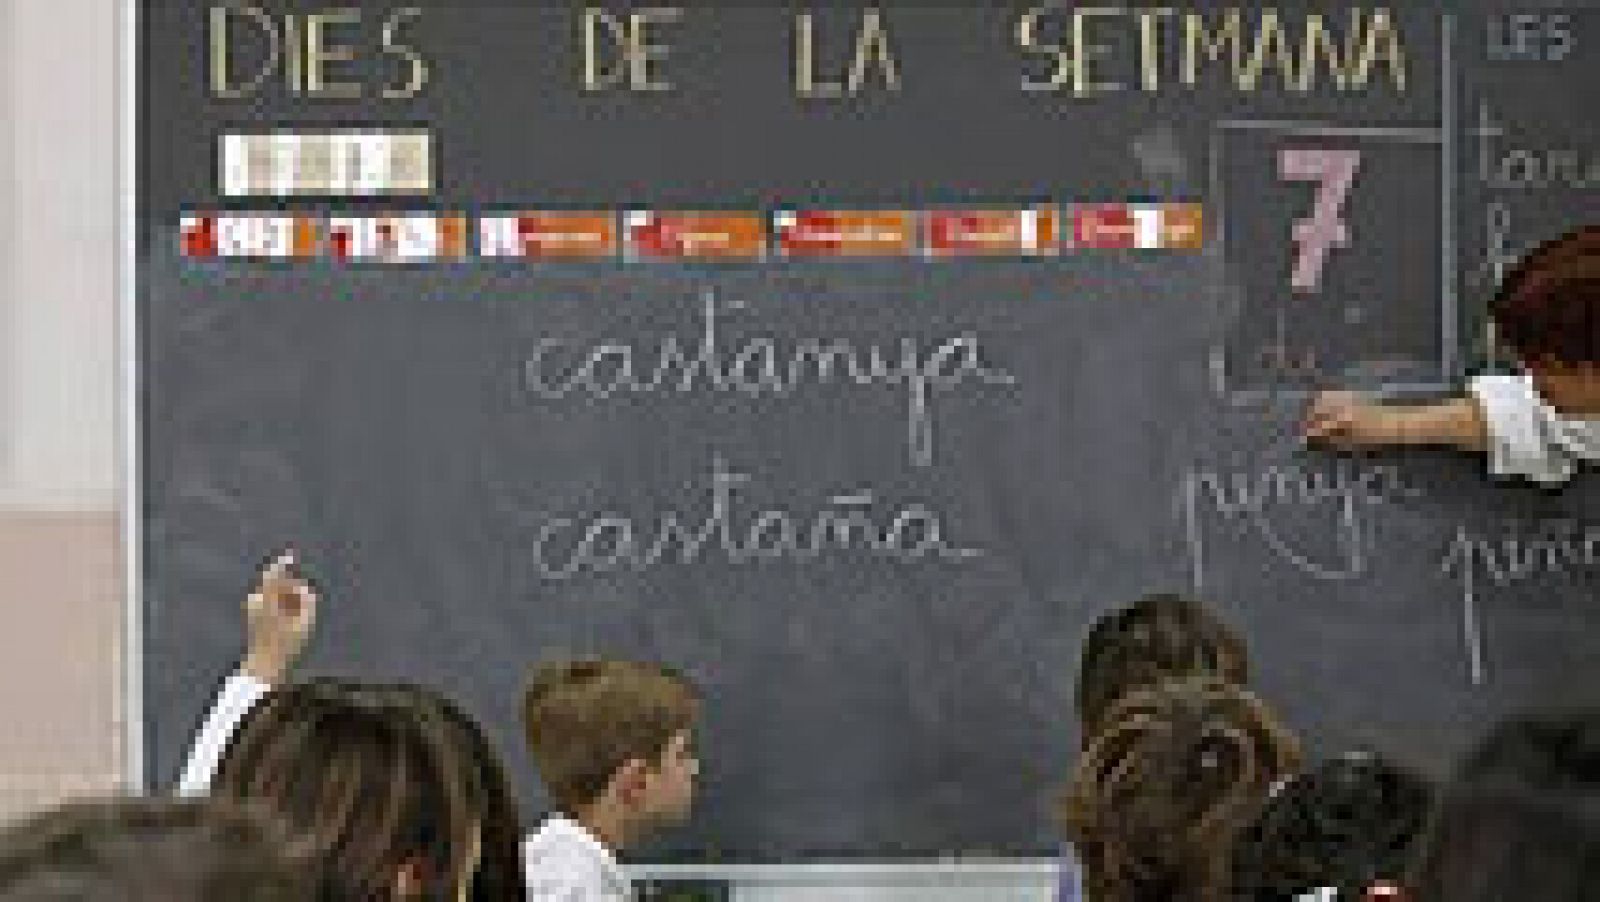 La Generalitat deberá indemnizar a una familia que pidió enseñanza en castellano para su hija